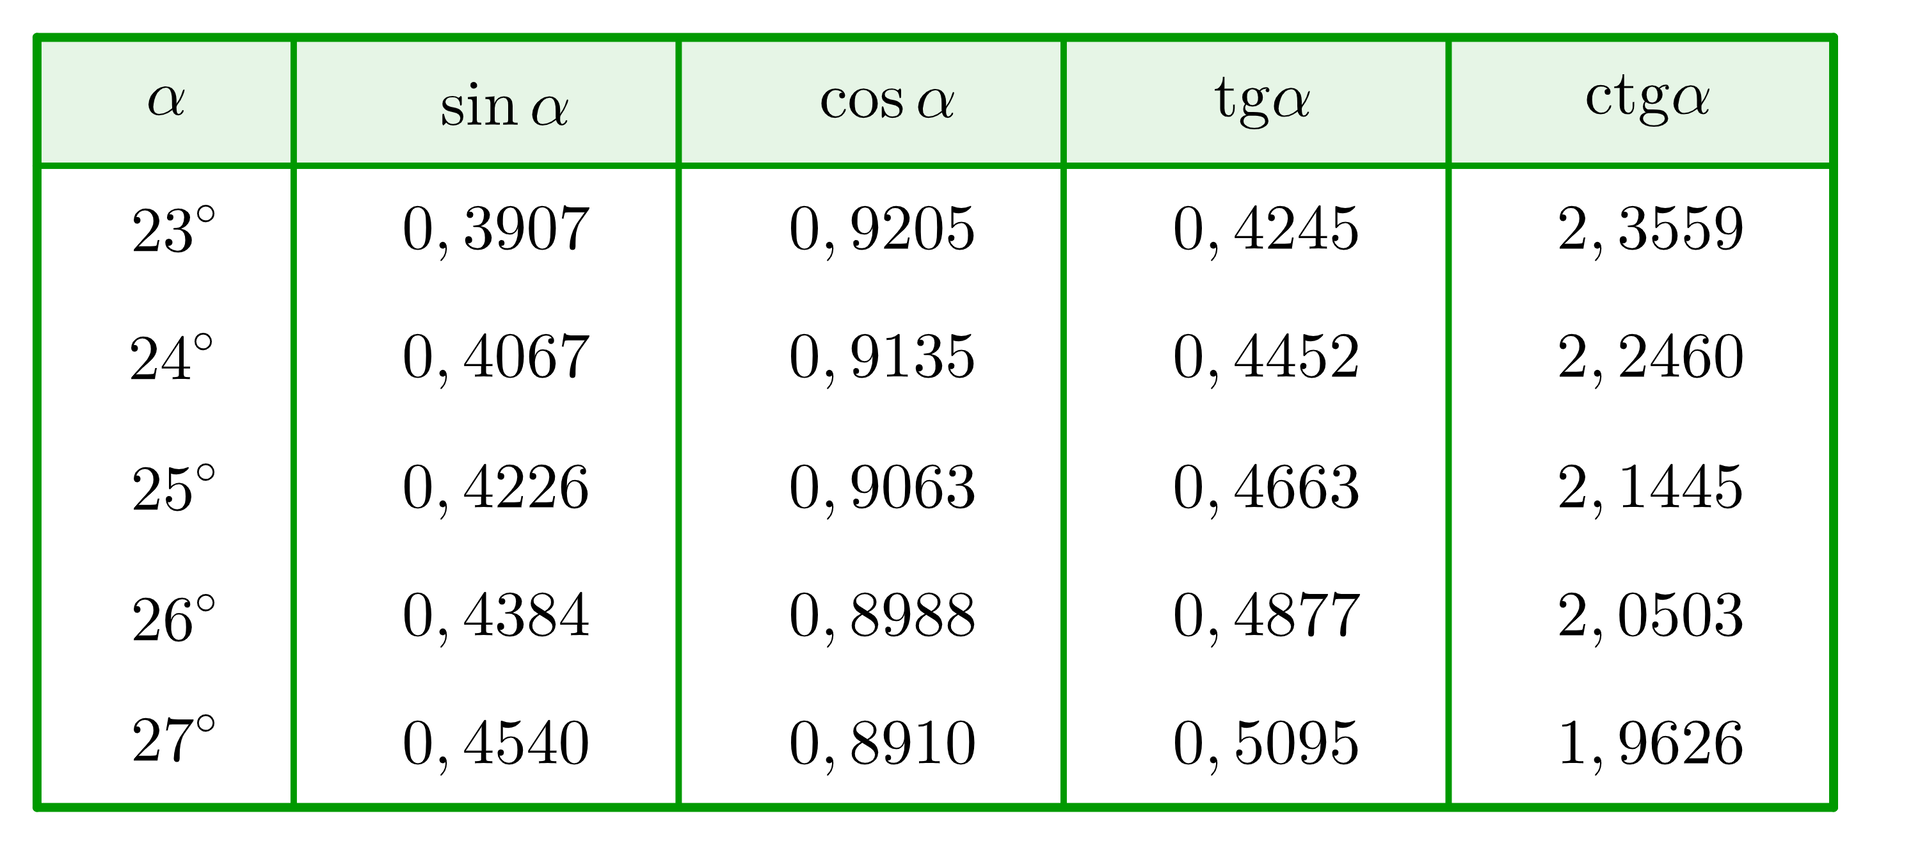 Tabela przedstawia wartości wybranych funkcji trygonometrycznych na kilku wartości kąta i składa się z pięciu kolumn i z sześciu wierszy, przy czym wiersz pierwszy jest wierszem nagłówkowym, w którym mamy od lewej: α, sinα, cosα, tgα, ctgα. Wiersz drugi przedstawia wartości funkcji trygonometrycznych dla kąta α o mierze dwudziestu trzech stopni. Wartości te to: sinα=0,3907, cosα=0,9205, tgα=0,4245, ctgα=2,3559. Wiersz trzeci przedstawia wartości funkcji trygonometrycznych dla kąta α o mierze dwudziestu czterech stopni. Wartości te to: sinα=0,4067, cosα=0,9135, tgα=0,4452, ctgα=2,2460. Wiersz czwarty przedstawia wartości funkcji trygonometrycznych dla kąta α o mierze dwudziestu pięciu stopni. Wartości te to: sinα=0,4226, cosα=0,9063, tgα=0,4663, ctgα=2,1445. Wiersz piąty przedstawia wartości funkcji trygonometrycznych dla kąta α o mierze dwudziestu sześciu stopni. Wartości te to: sinα=0,4384, cosα=0,8988, tgα=0,4877, ctgα=2,0503. Wiersz szósty przedstawia wartości funkcji trygonometrycznych dla kąta α o mierze dwudziestu siedmiu stopni. Wartości te to: sinα=0,4540, cosα=0,8910, tgα=0,5095, ctgα=1,9626.